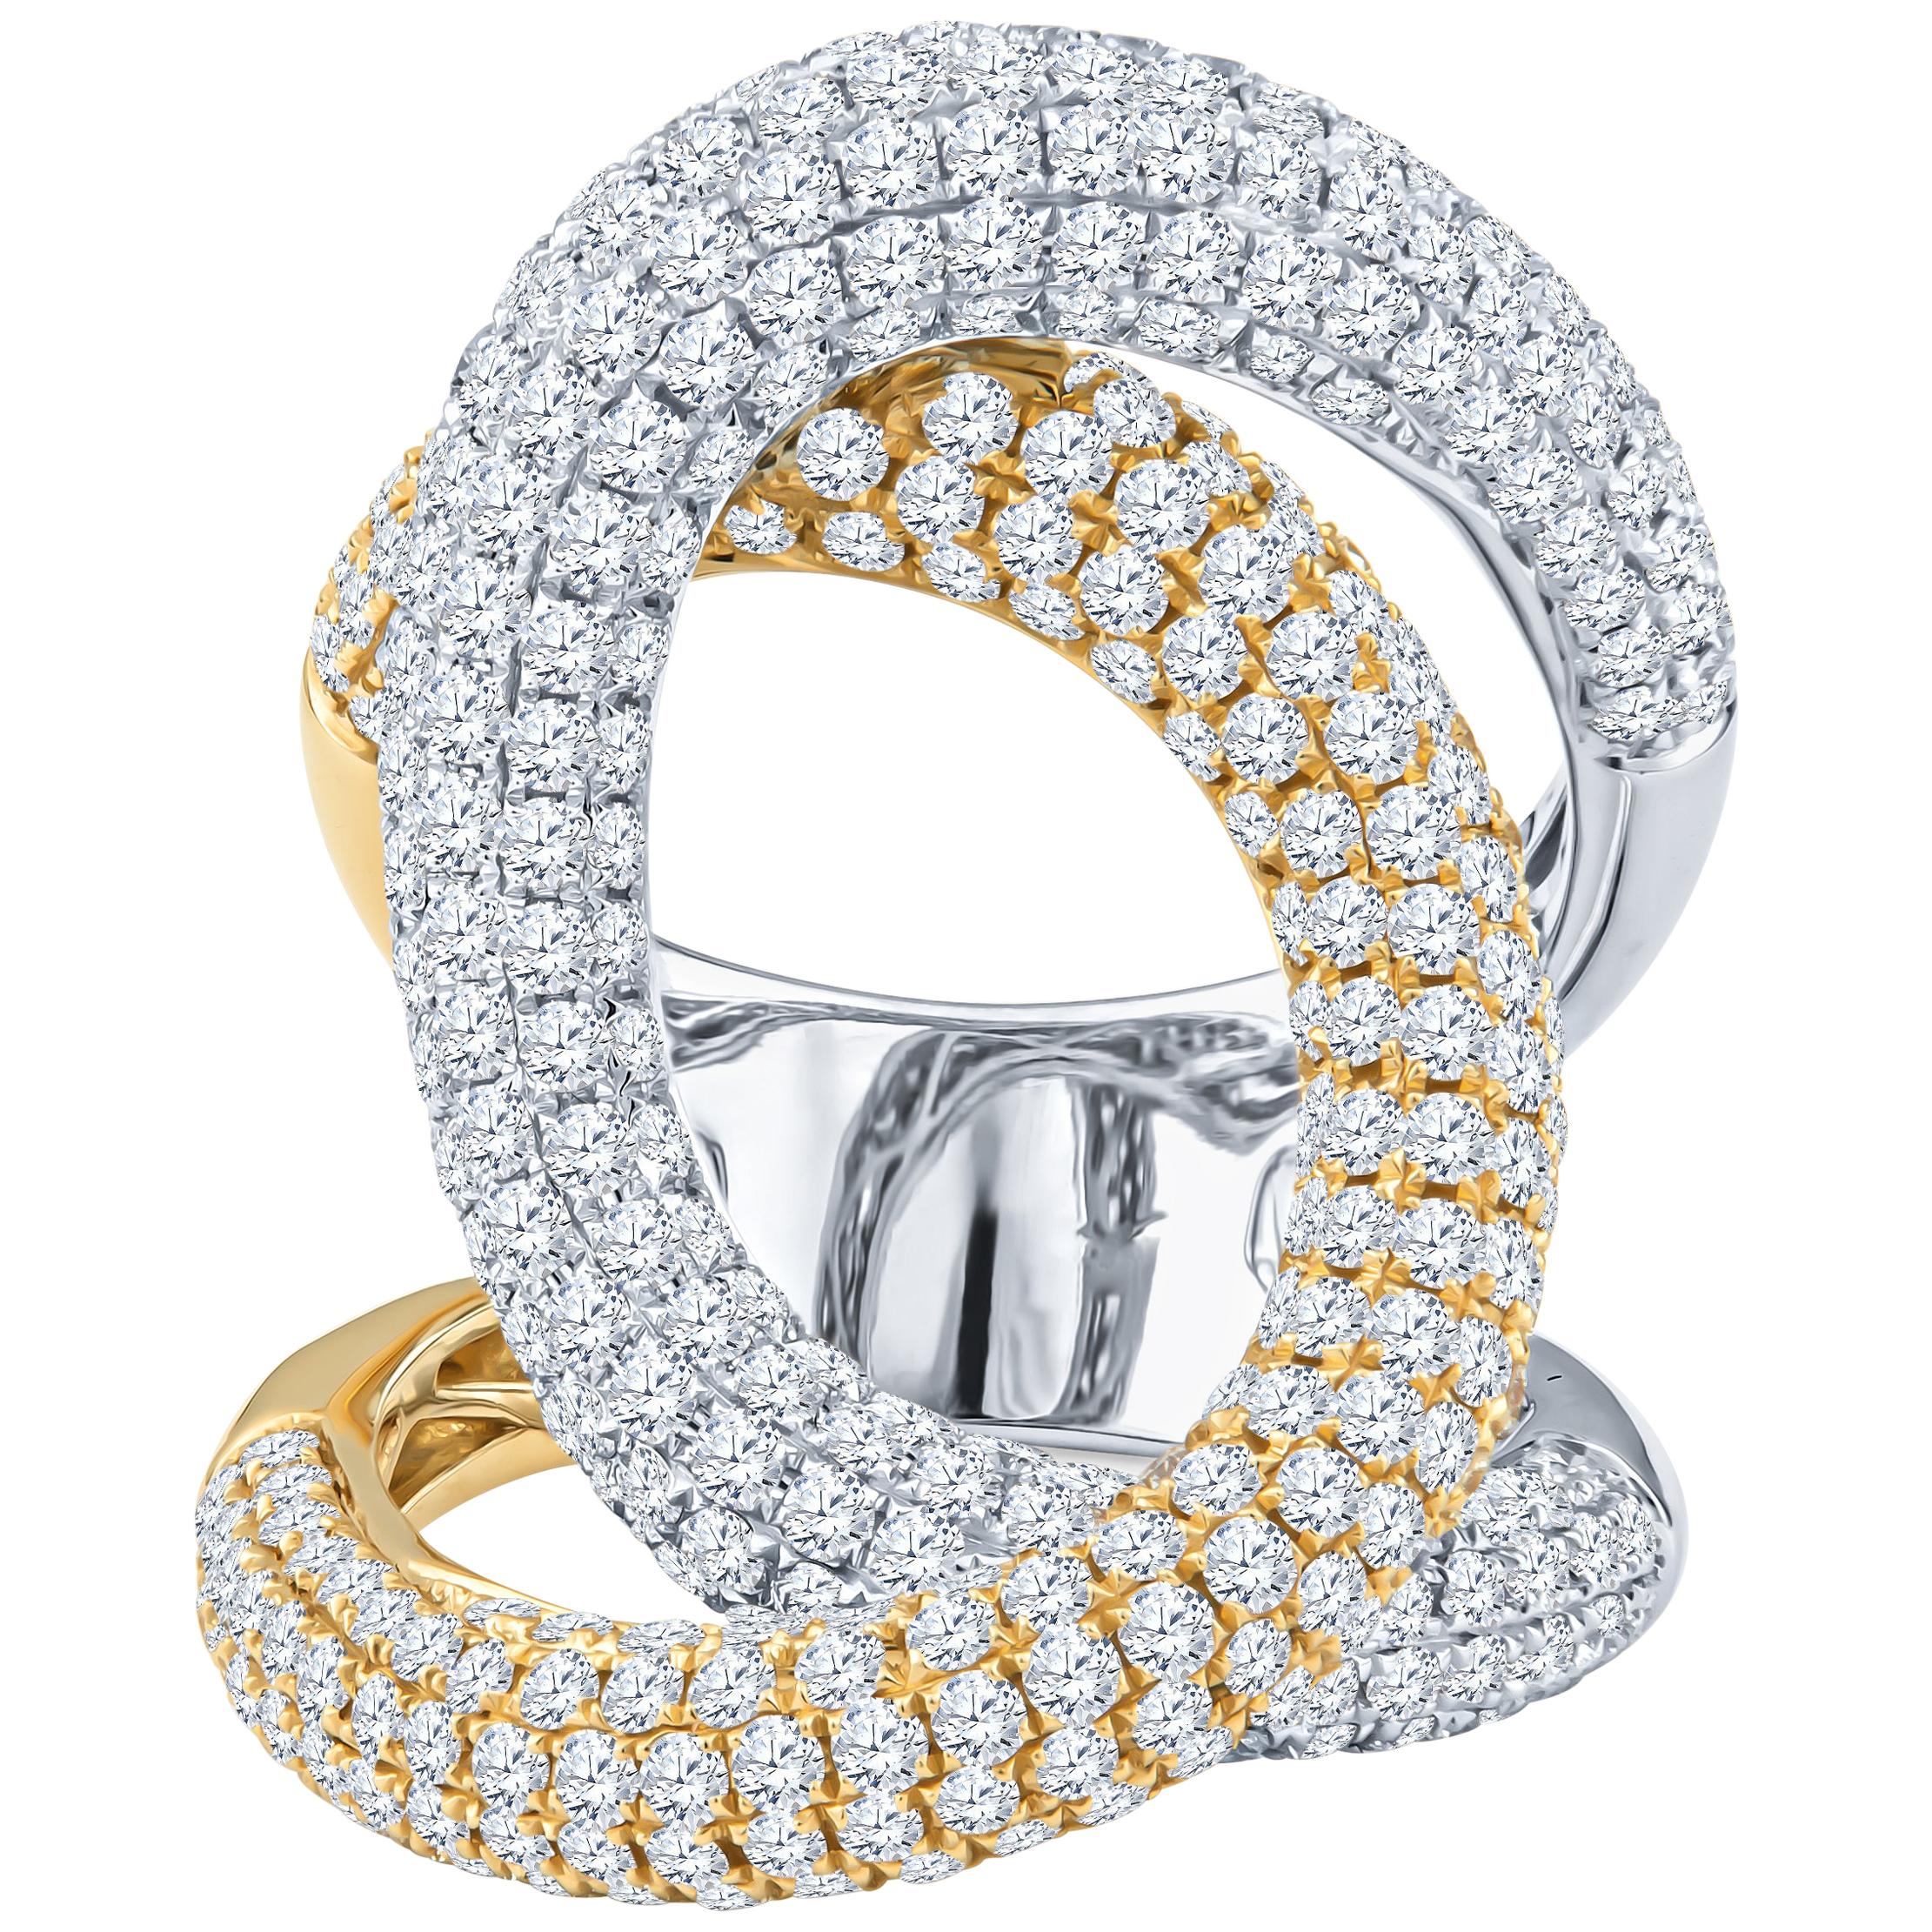 3.70 Carat Pave Diamond 18 Karat White and Yellow Gold Swirl Ring